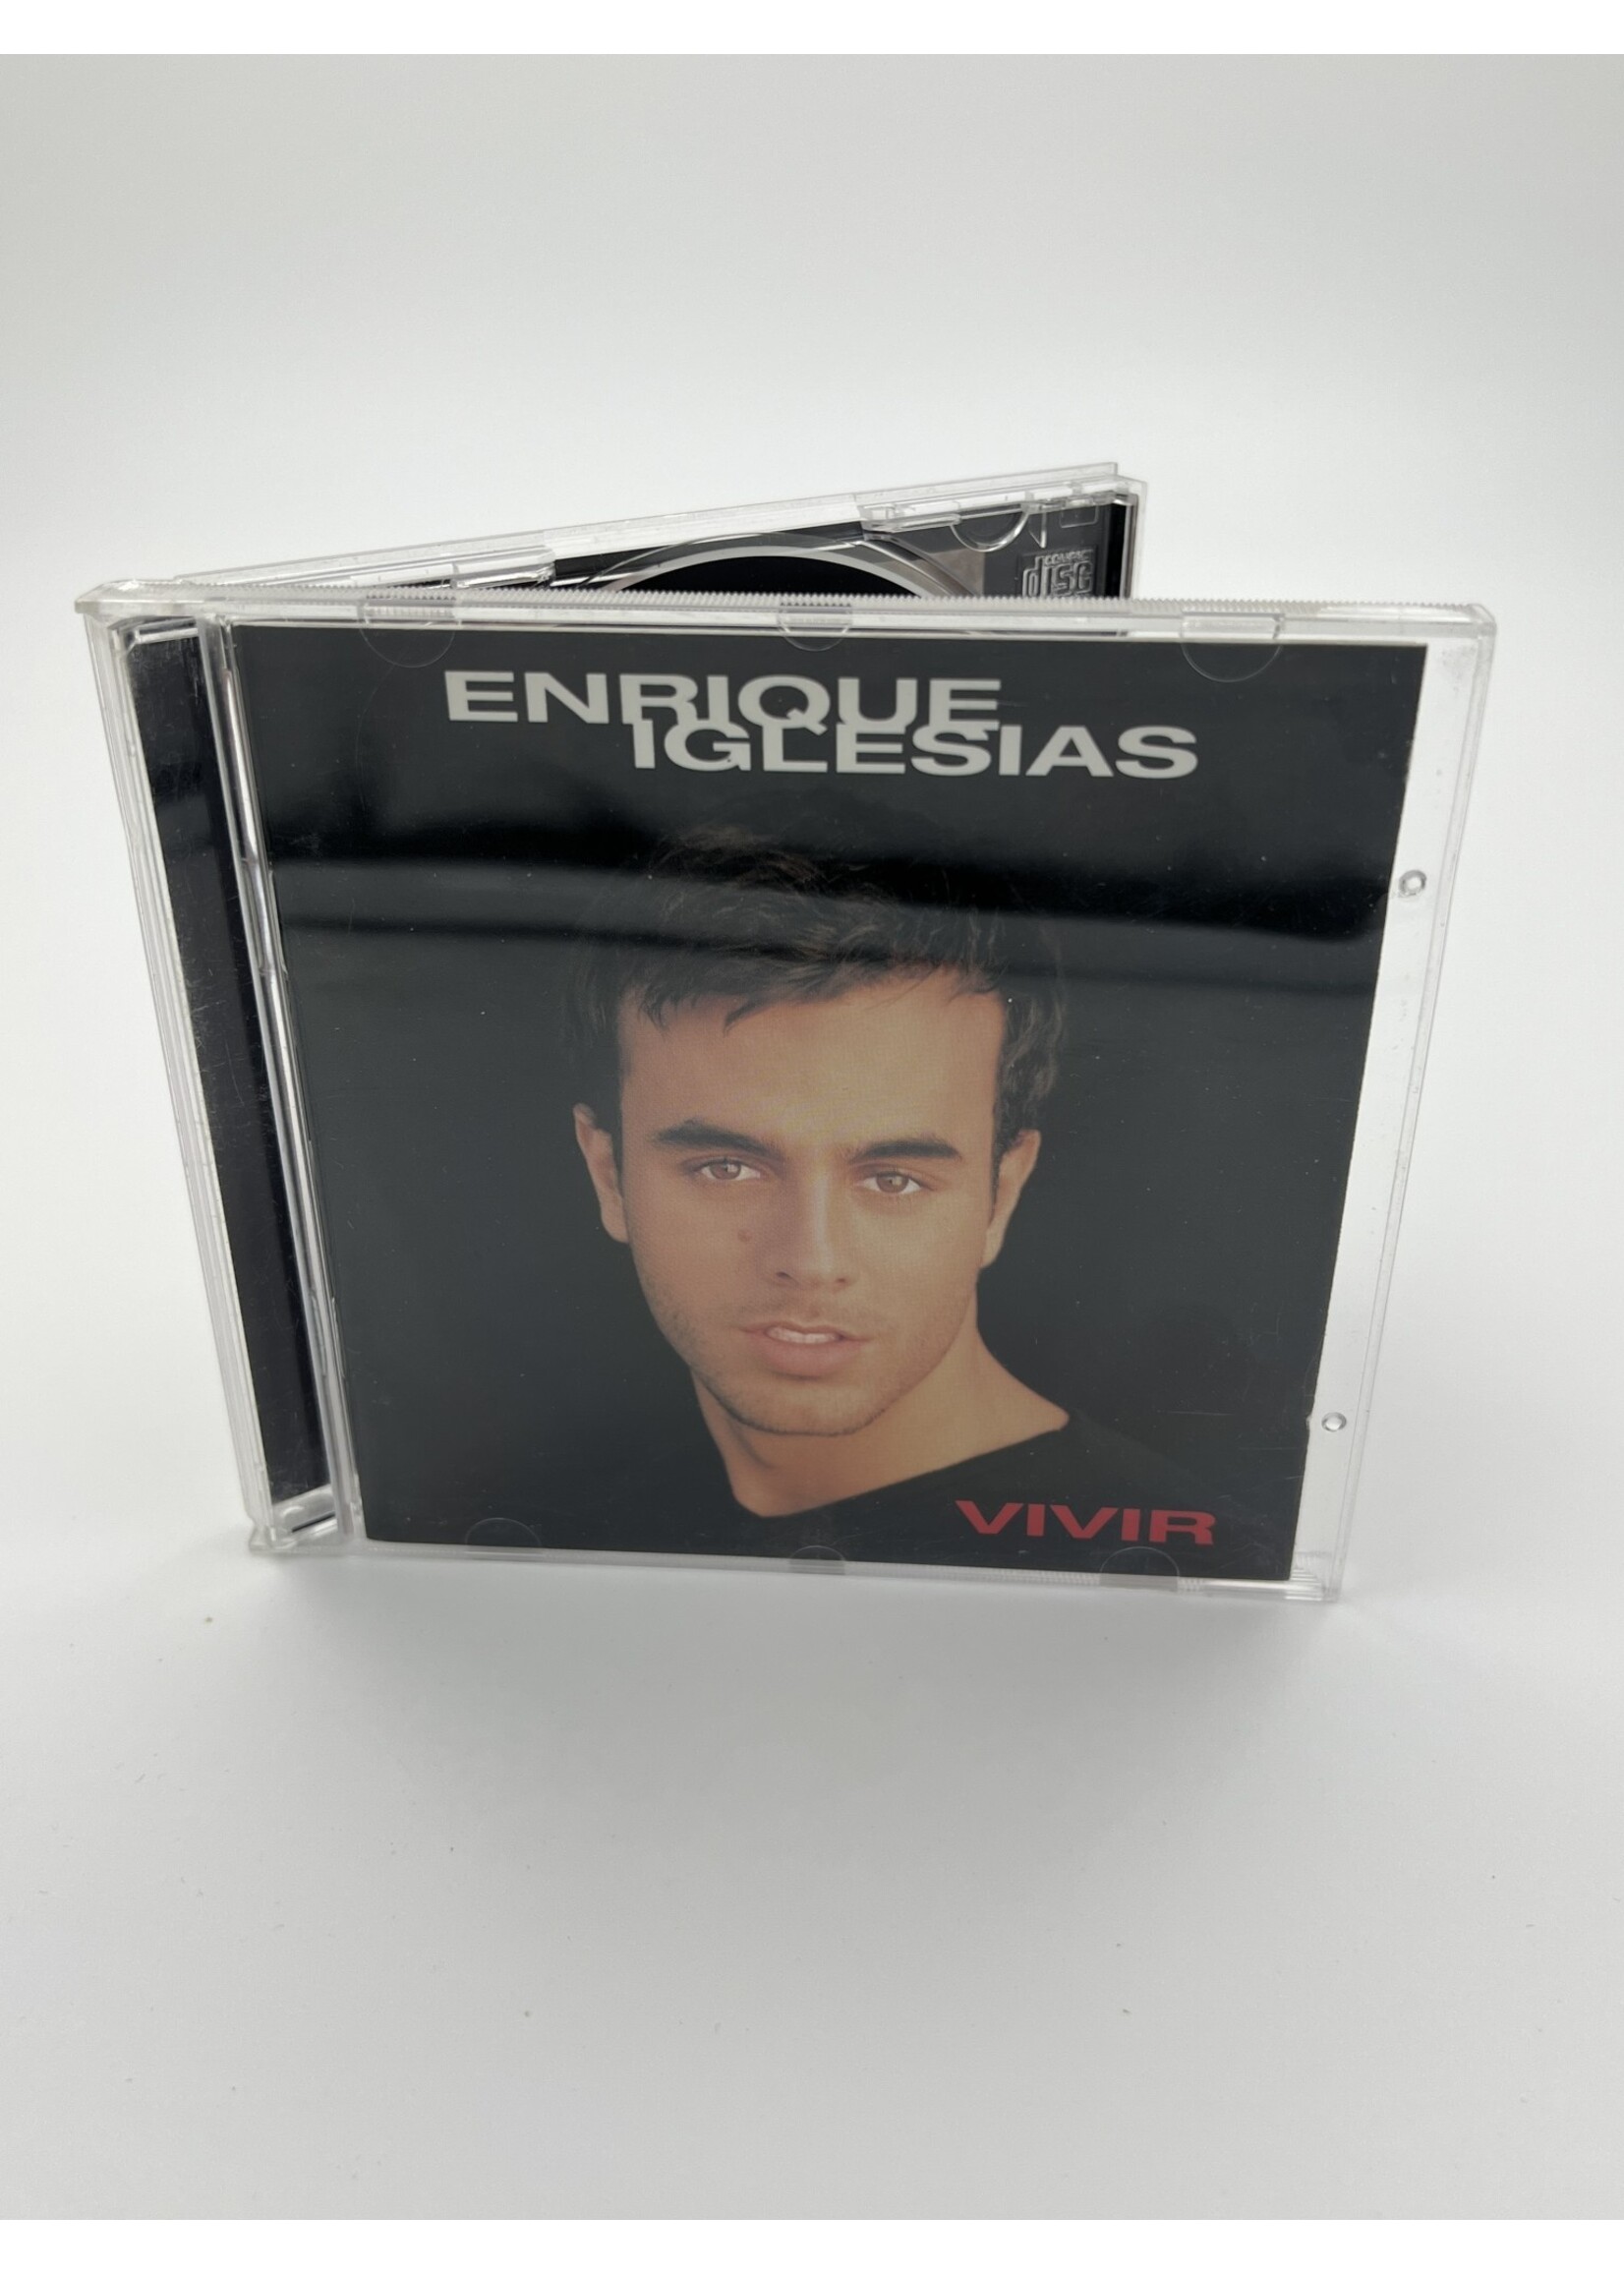 CD   Enrique Iglesias Vivir CD